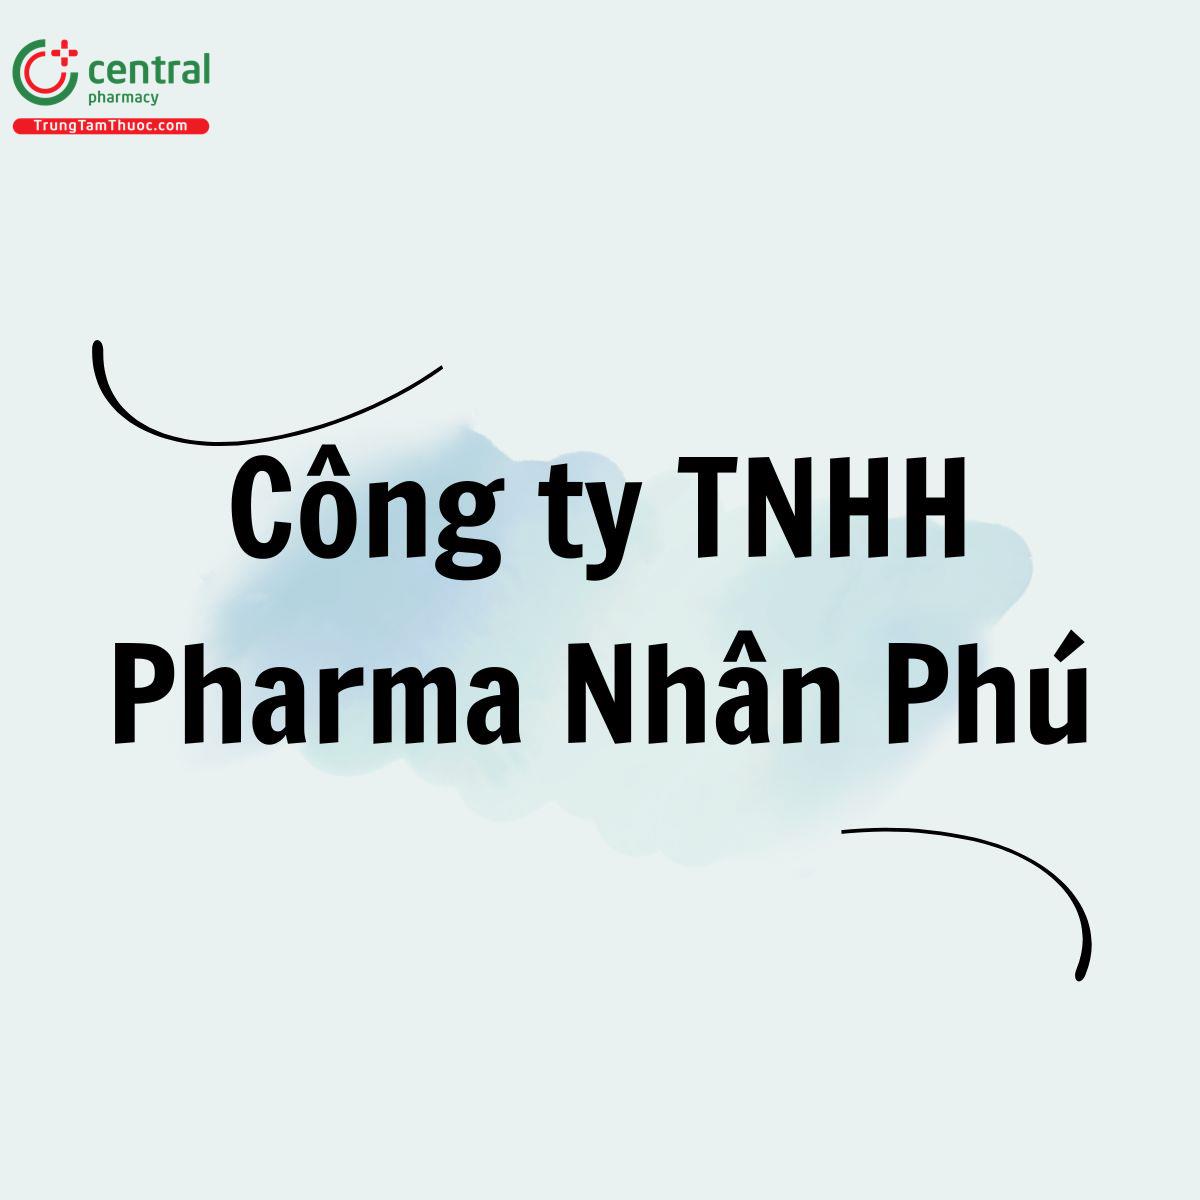 Công ty TNHH Pharma Nhân Phú